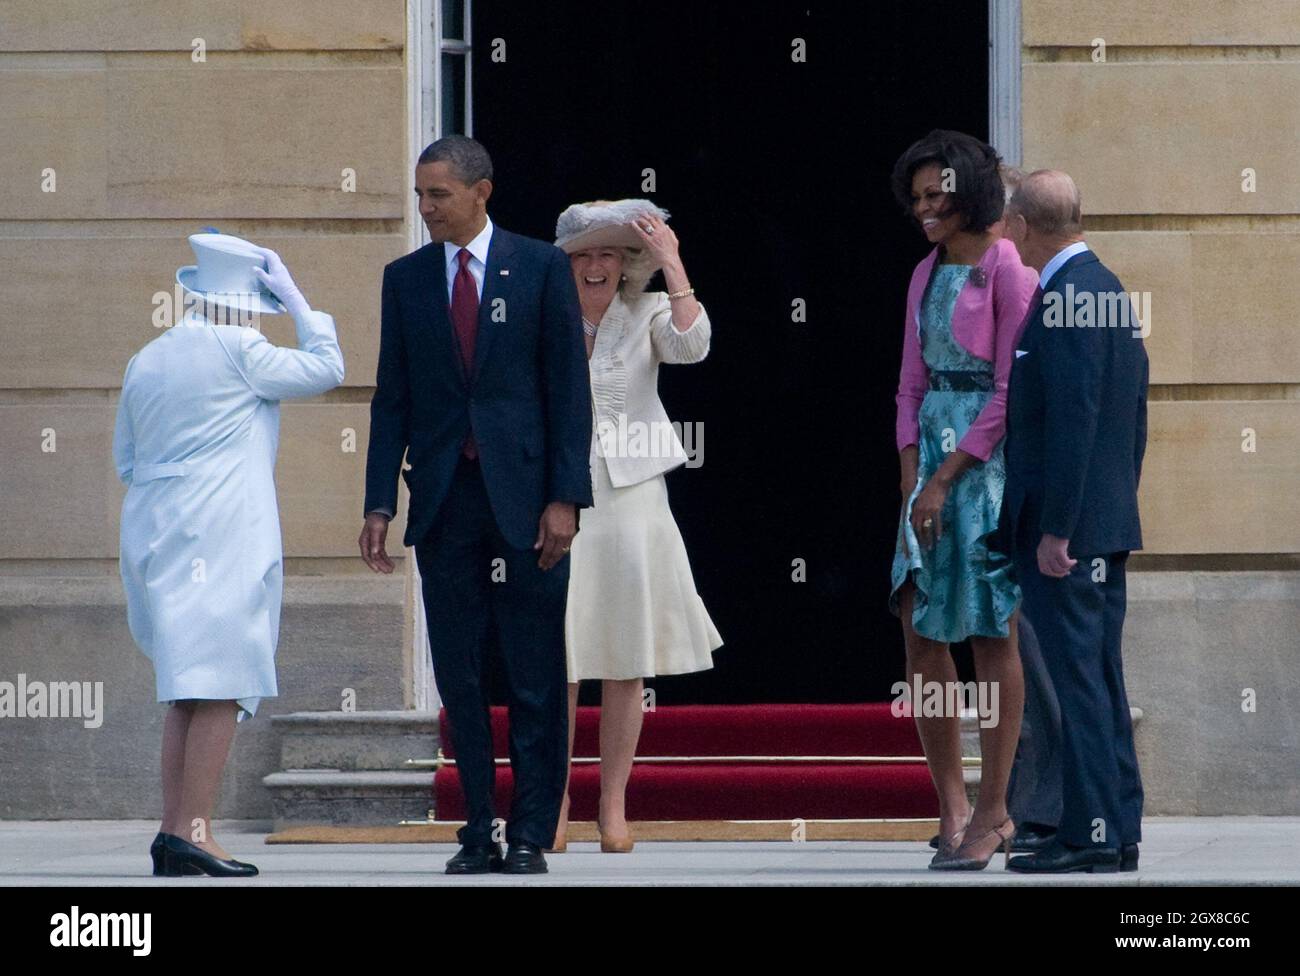 La reine Elizabeth II, le président américain Barack Obama, Camilla, la duchesse de Cornwall, le prince Charles, le prince de Galles,La première dame Michelle Obama et le prince Philip, duc d'Édimbourg, regardent un accueil de cérémonie dans les jardins de Buckingham Palace le 24 mai 2011 à Londres, en Angleterre. Banque D'Images